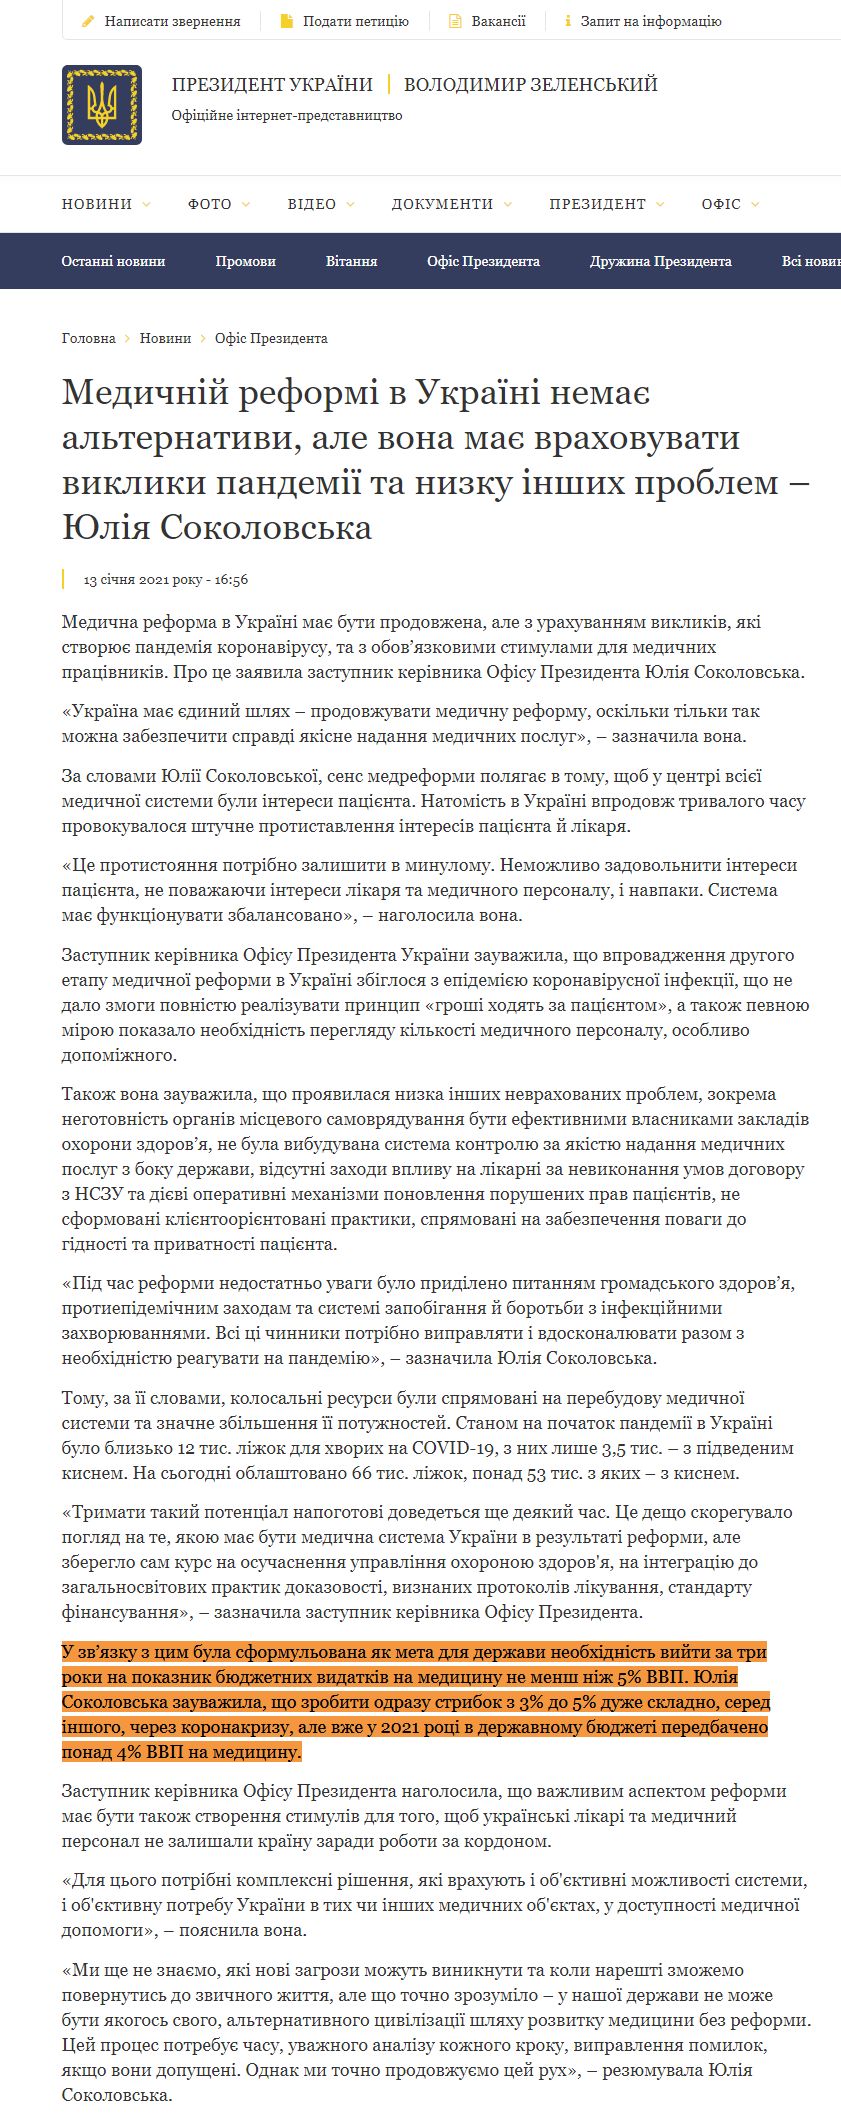 https://www.president.gov.ua/news/medichnij-reformi-v-ukrayini-nemaye-alternativi-ale-vona-may-66029